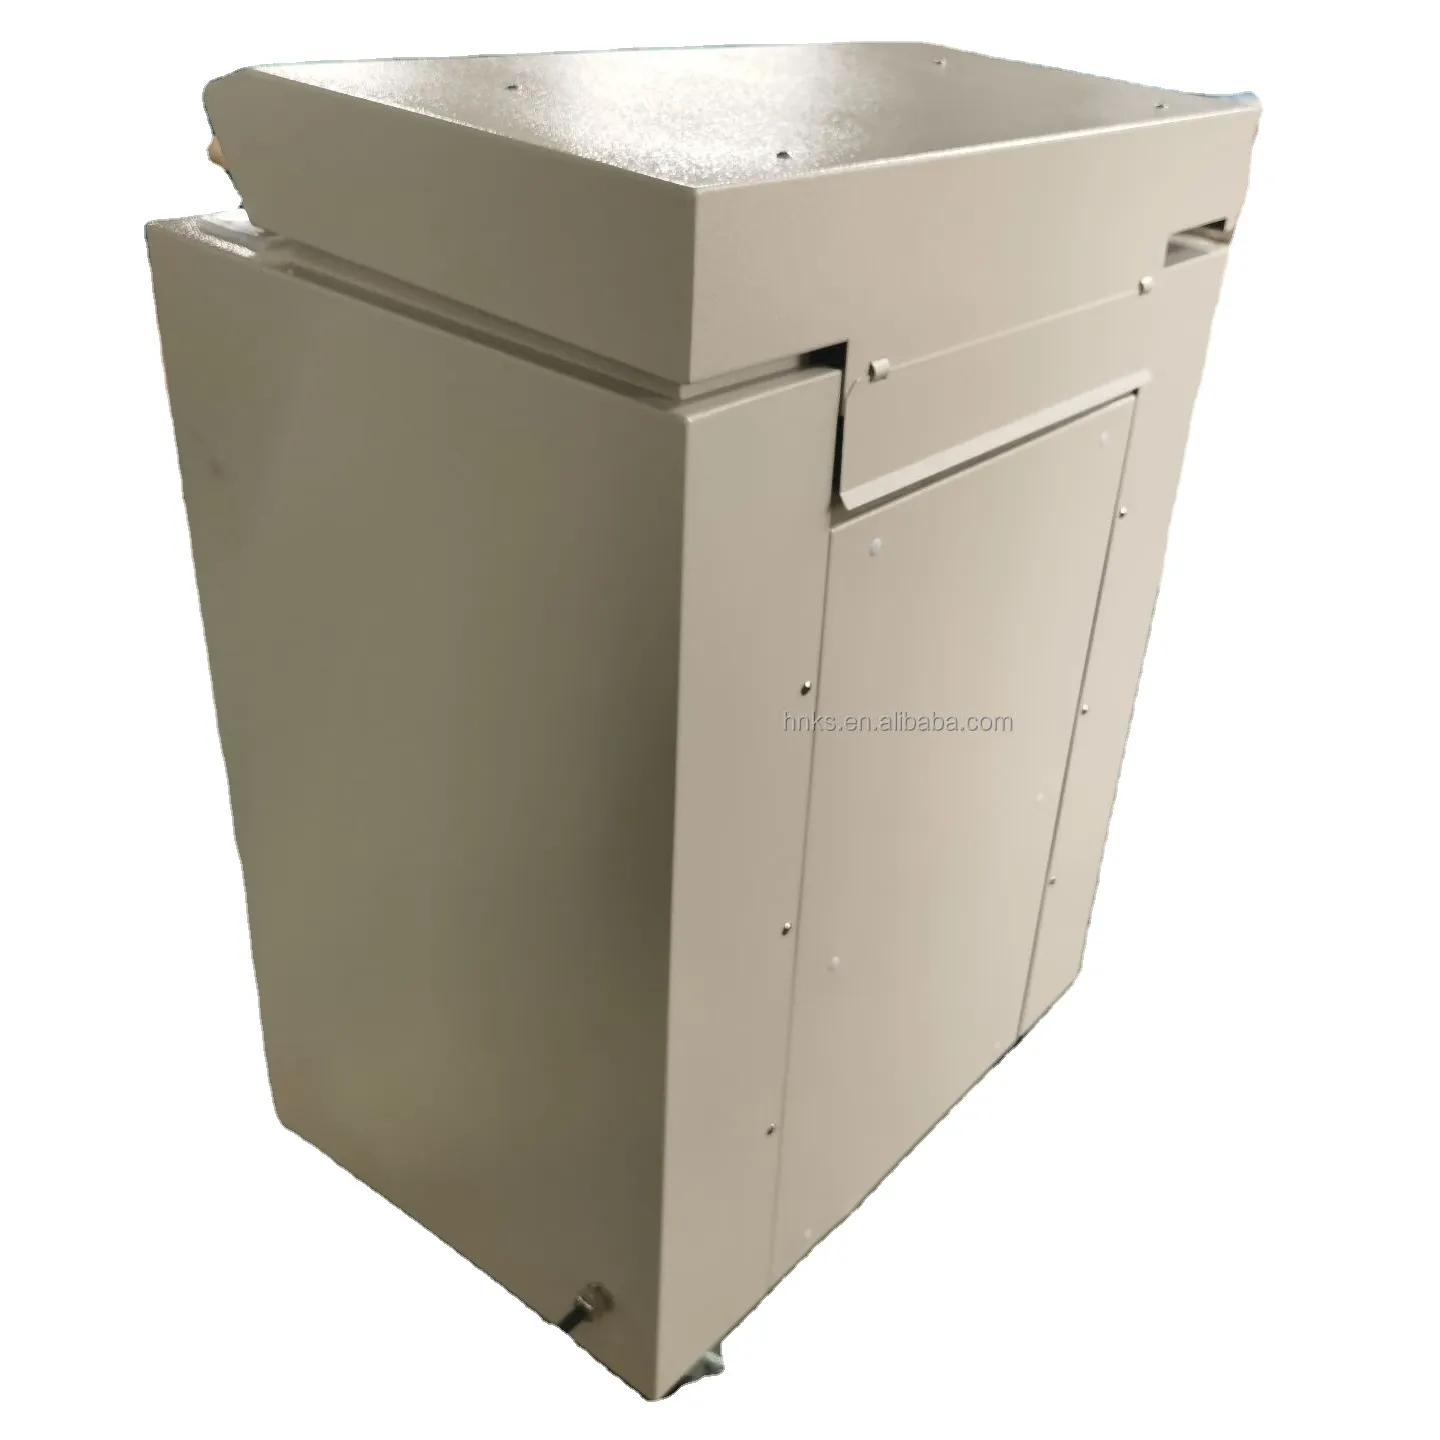 Vendita calda tagliatrice di carta scatola di cartone trituratore scatola di cartone trituratore macchina per il riciclaggio del cartone taglierina per cartone di carta Waster